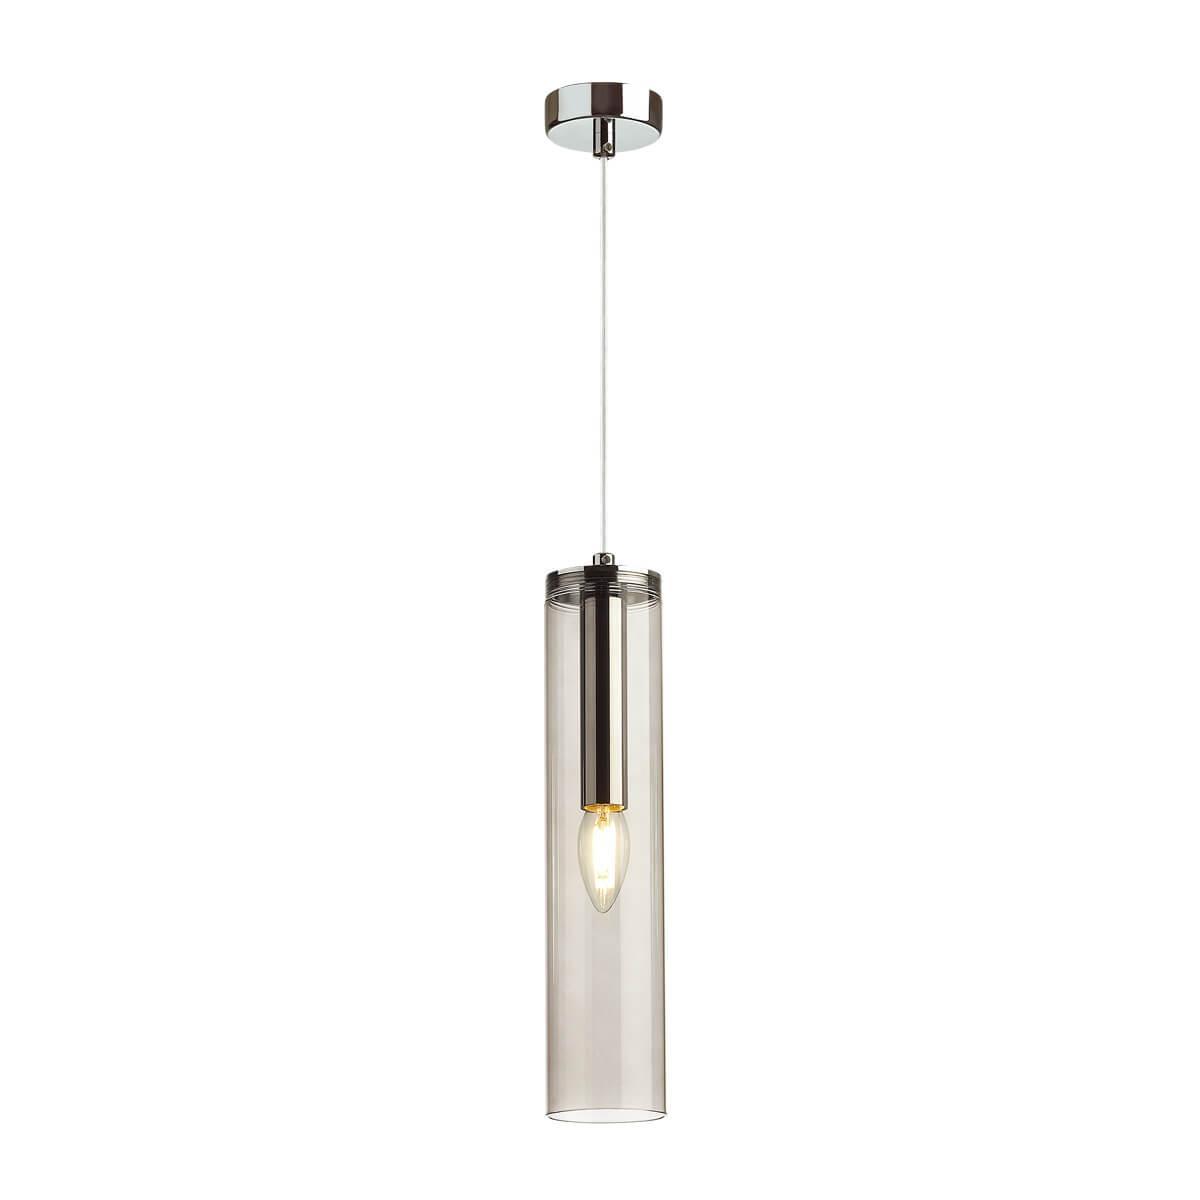 Подвесной светильник Odeon Light Klum 4694/1 накладной светильник lc lsip 40 1150 76 76 мм ip65 теплый белый прозрачный